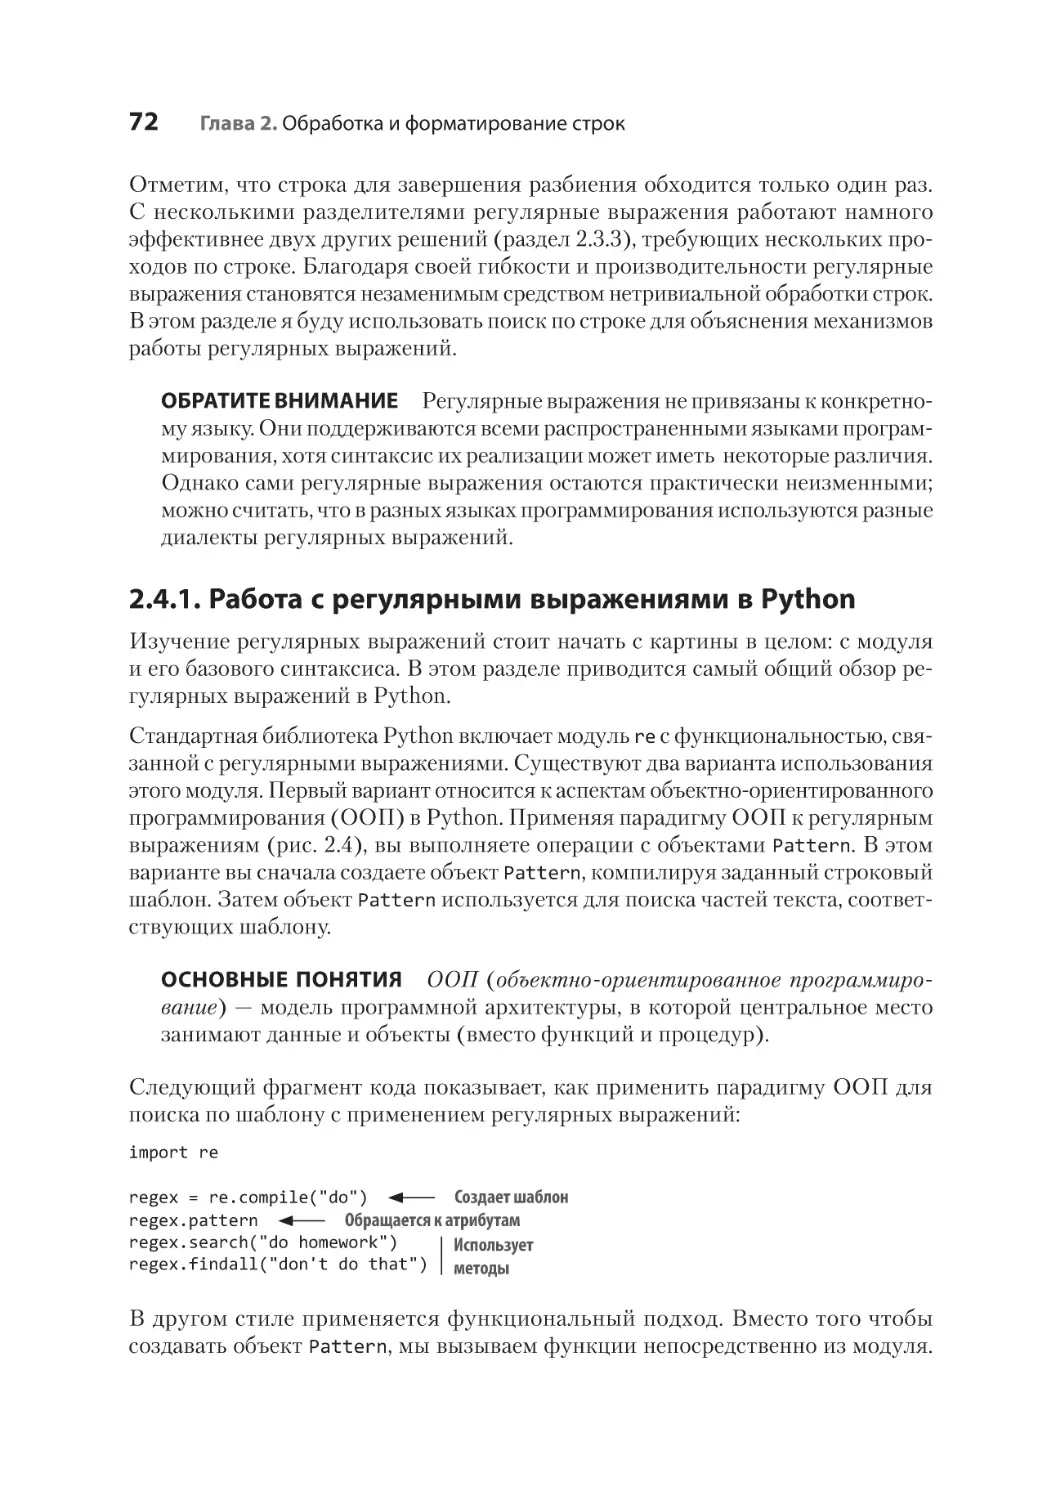 2.4.1. Работа с регулярными выражениями в Python